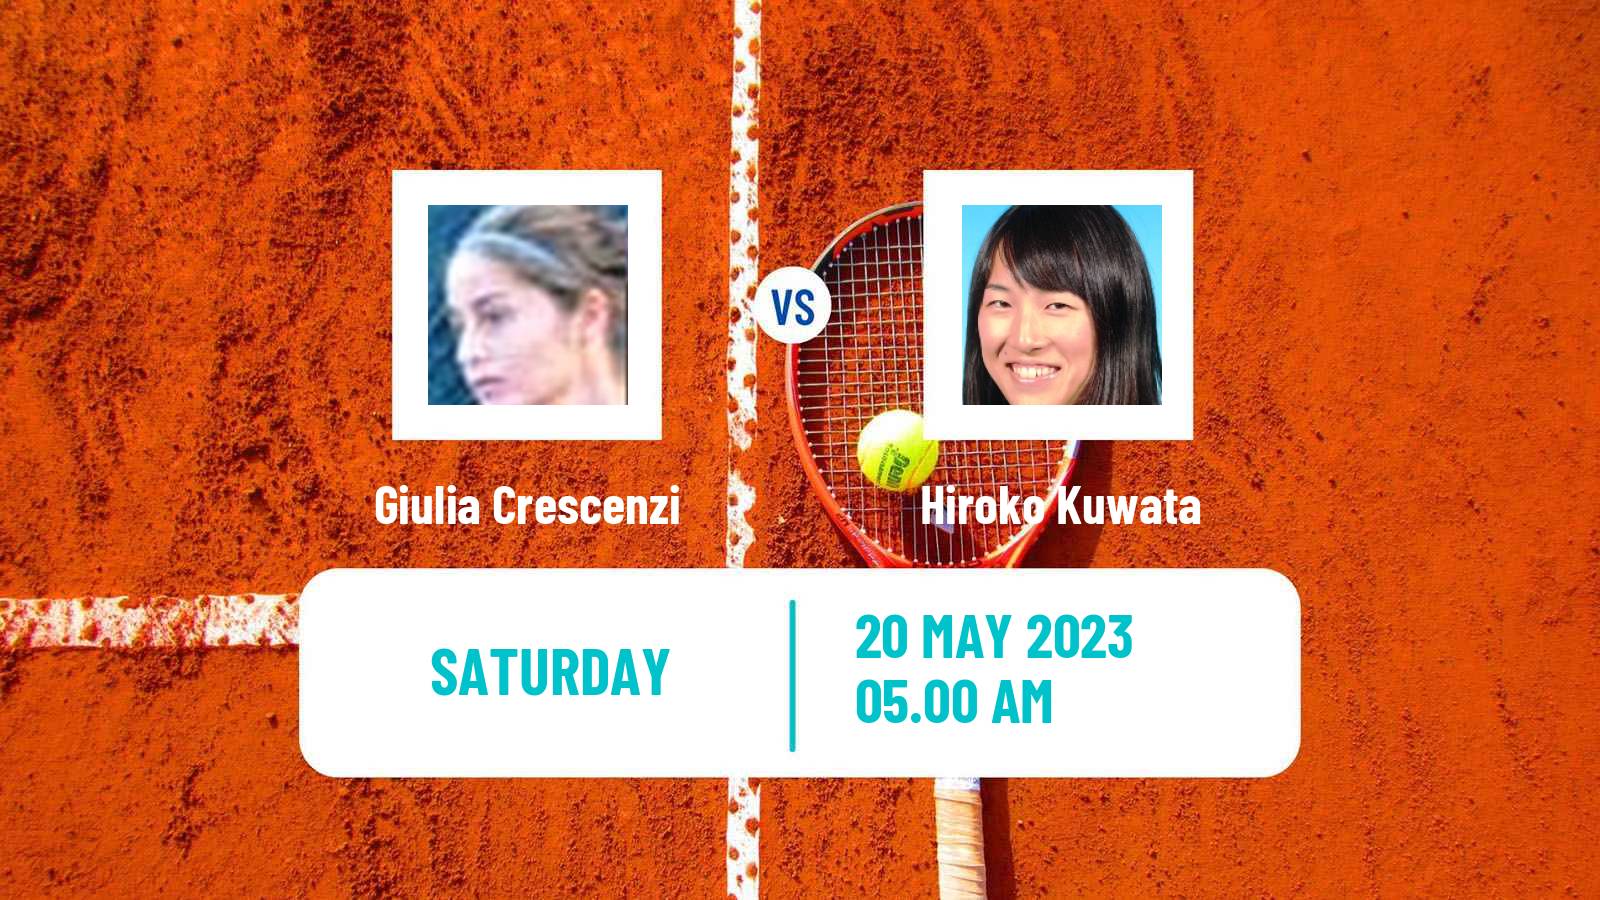 Tennis ITF W15 Monastir 16 Women Giulia Crescenzi - Hiroko Kuwata